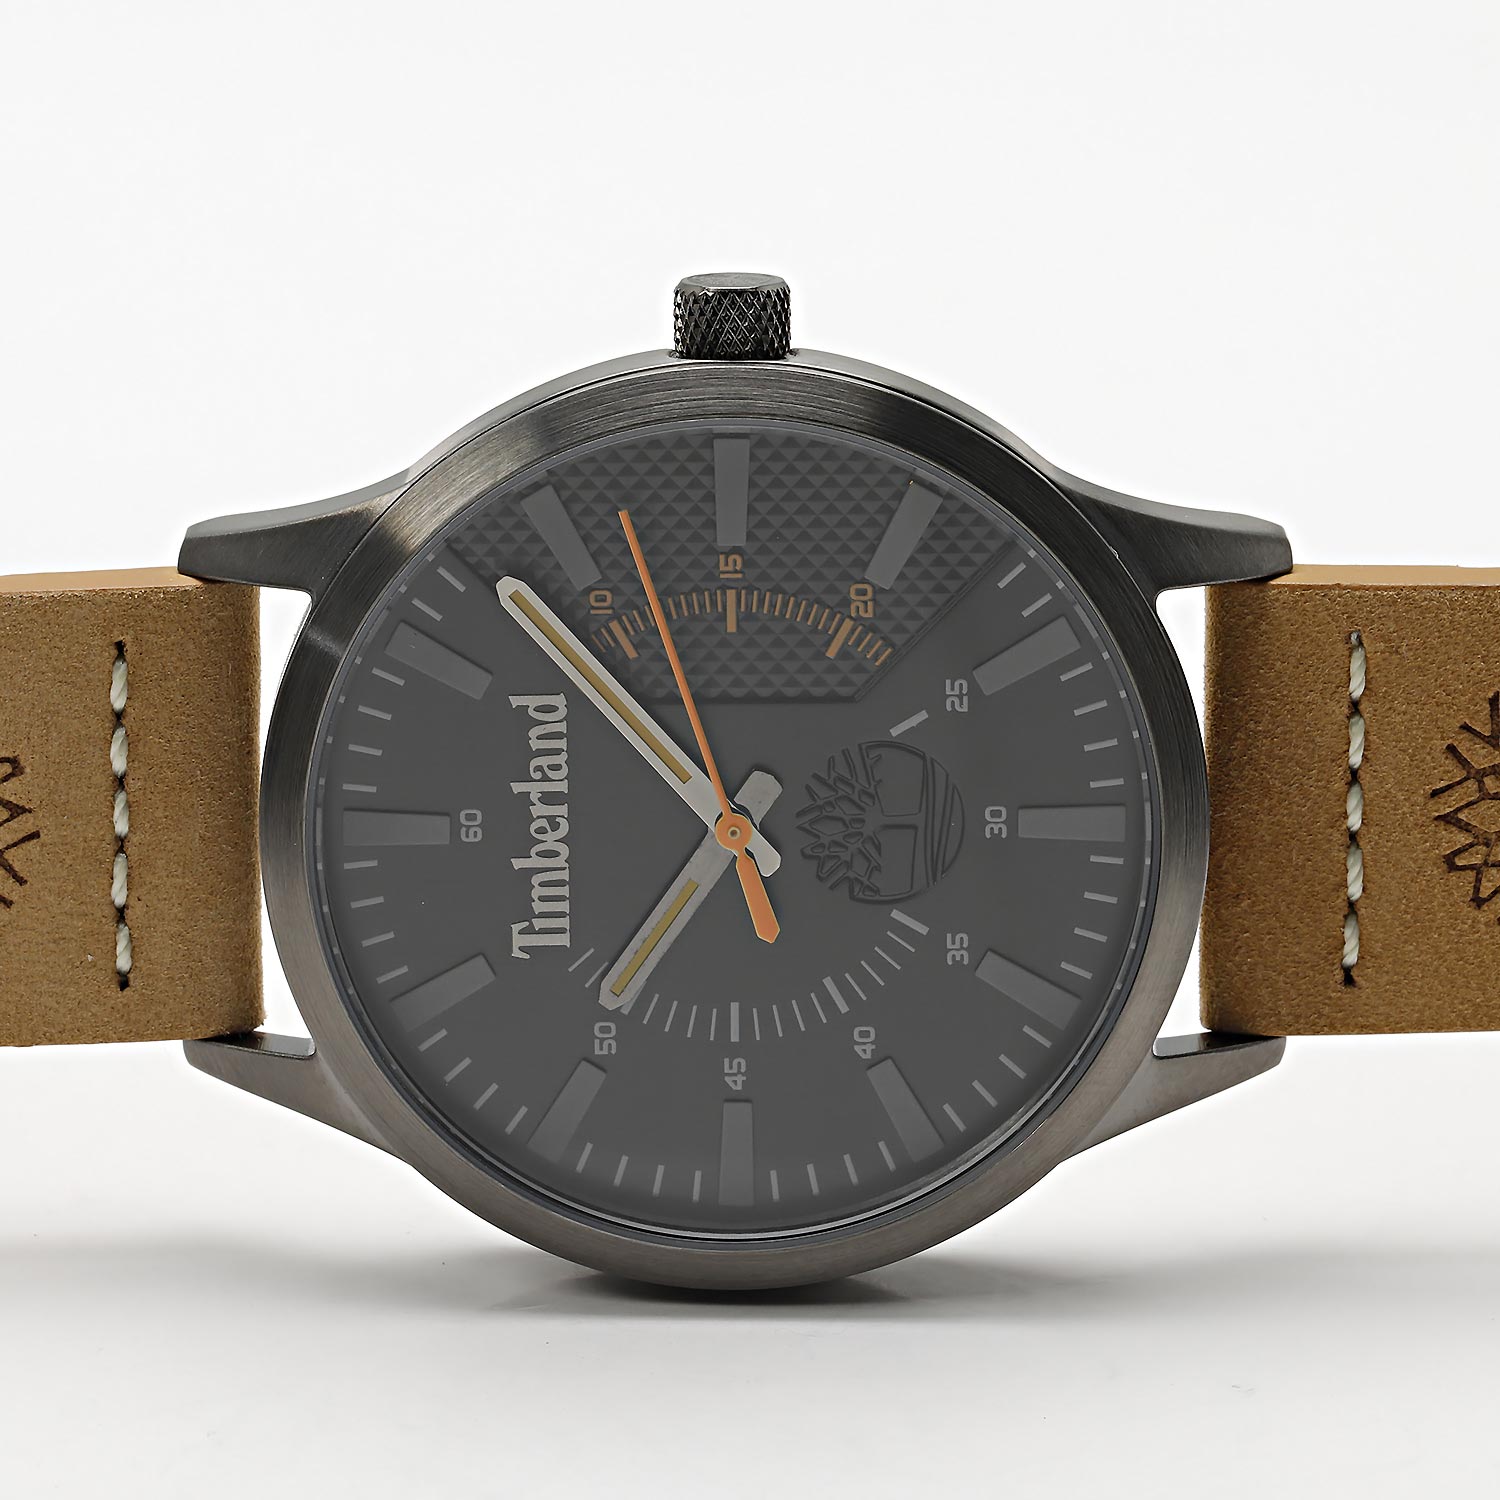 Наручные часы Timberland TDWGA2103601 в описание фото, — цене, лучшей купить интернет-магазине AllTime.ru по инструкция, характеристики